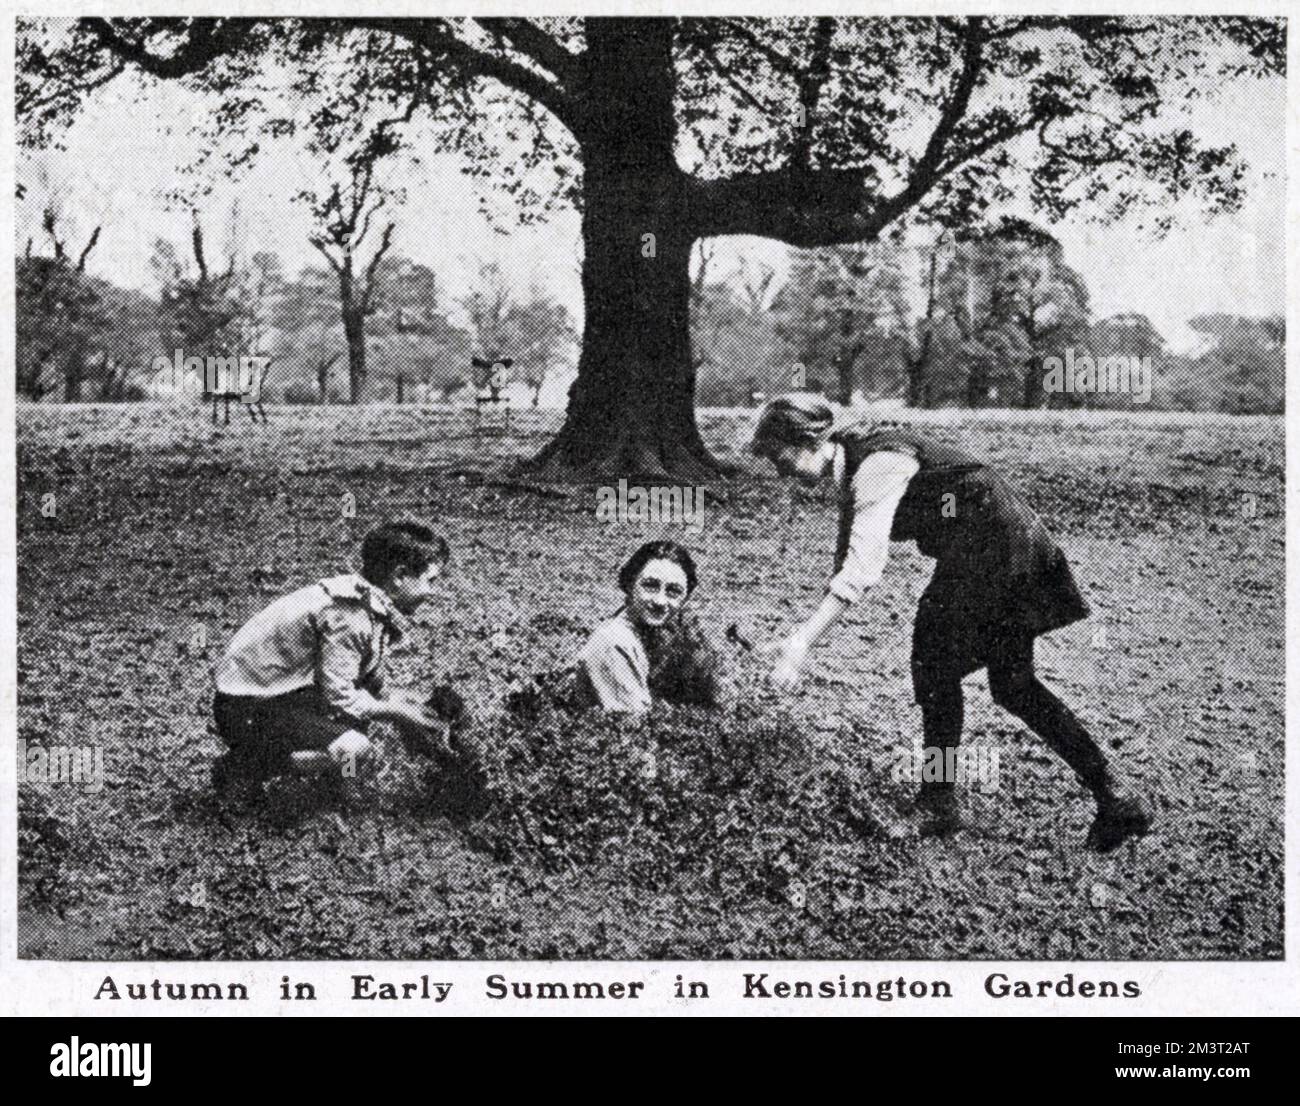 Mädchen in Kensington Gardens, die im Sommer 1921 bei heißem Wetter und langer Trockenheit zwischen getrockneten Blättern spielen, die von den Bäumen gefallen sind. Datum: Juli 1921 Stockfoto